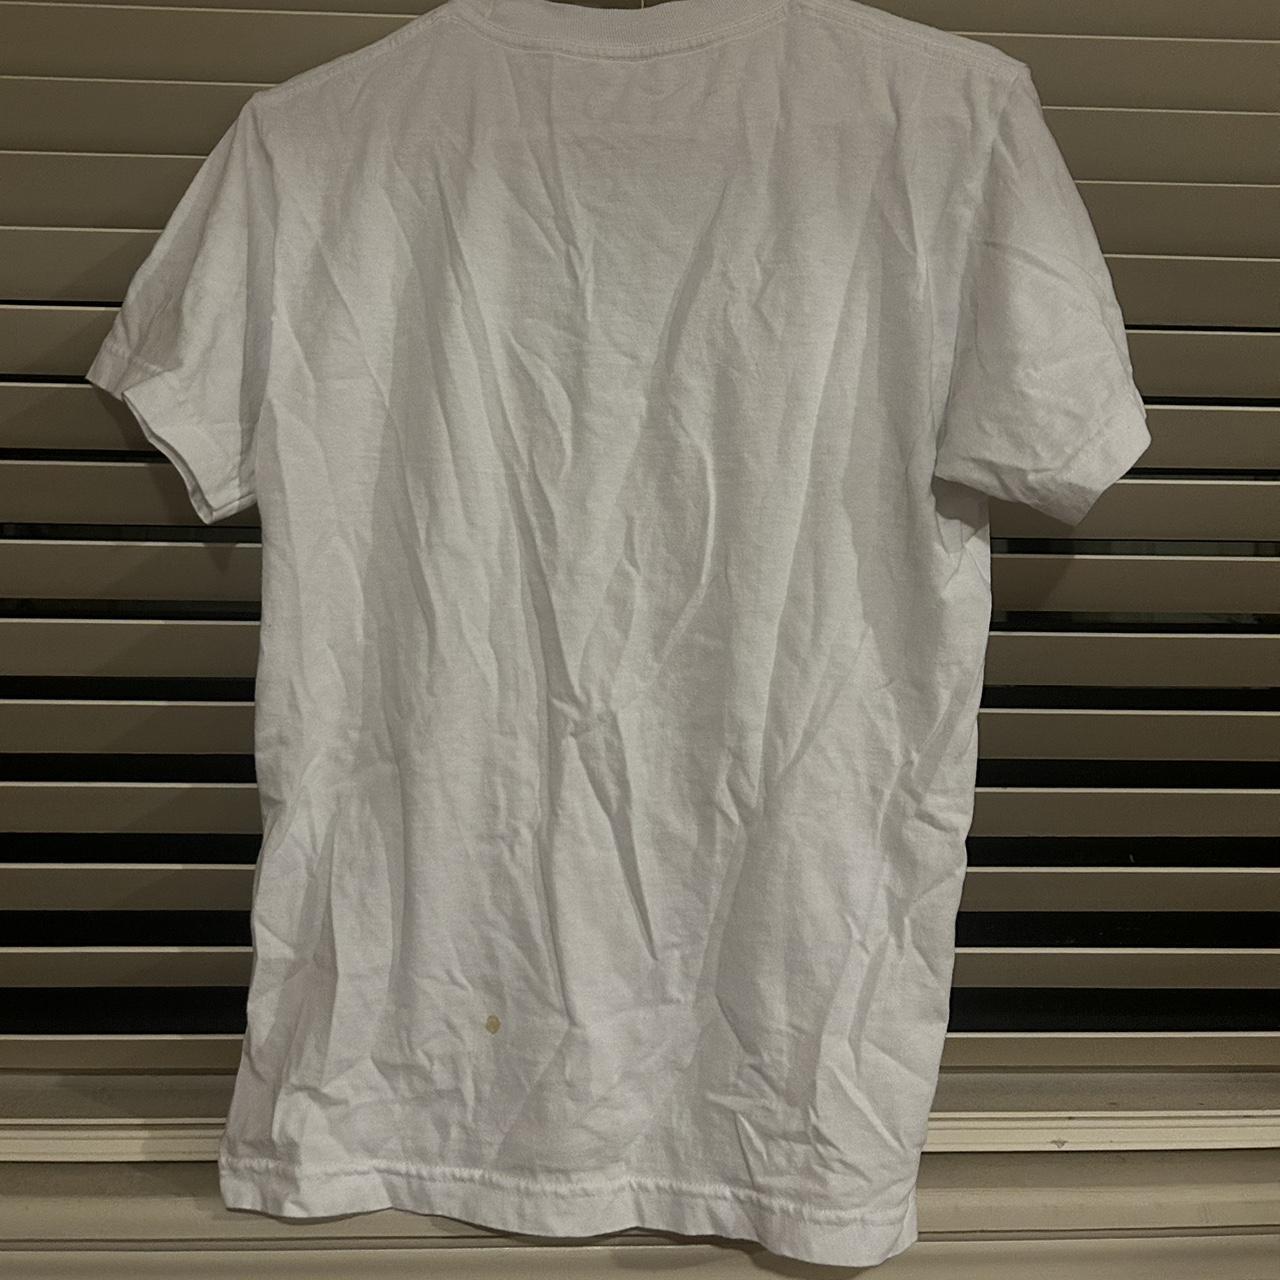 Brockhampton Men's multi T-shirt (2)